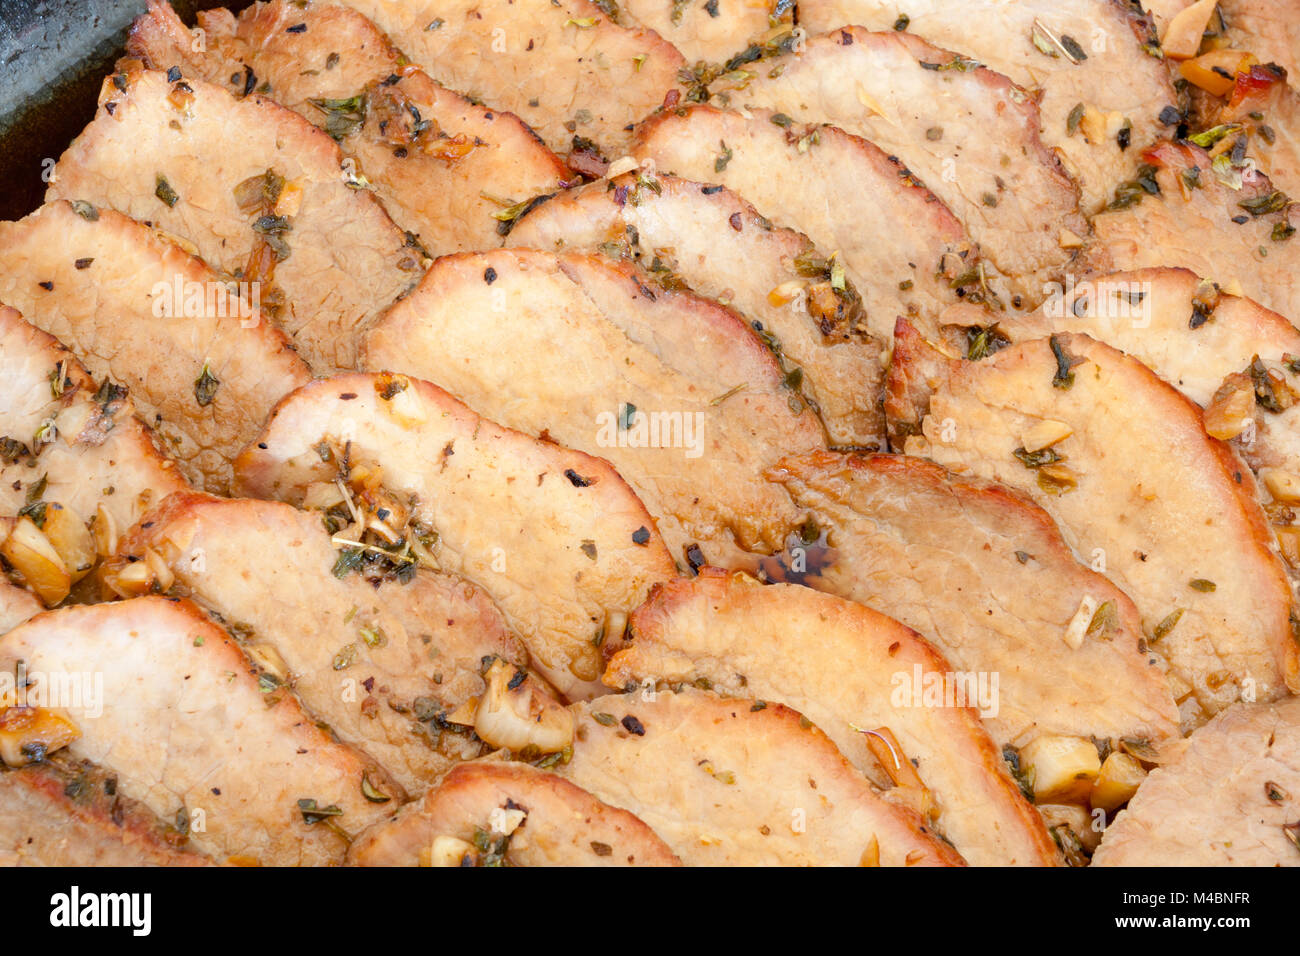 Rôti de porc, boeuf, fait maison avec de la sauce soja, le vin de riz, sucre, ail, origan Banque D'Images